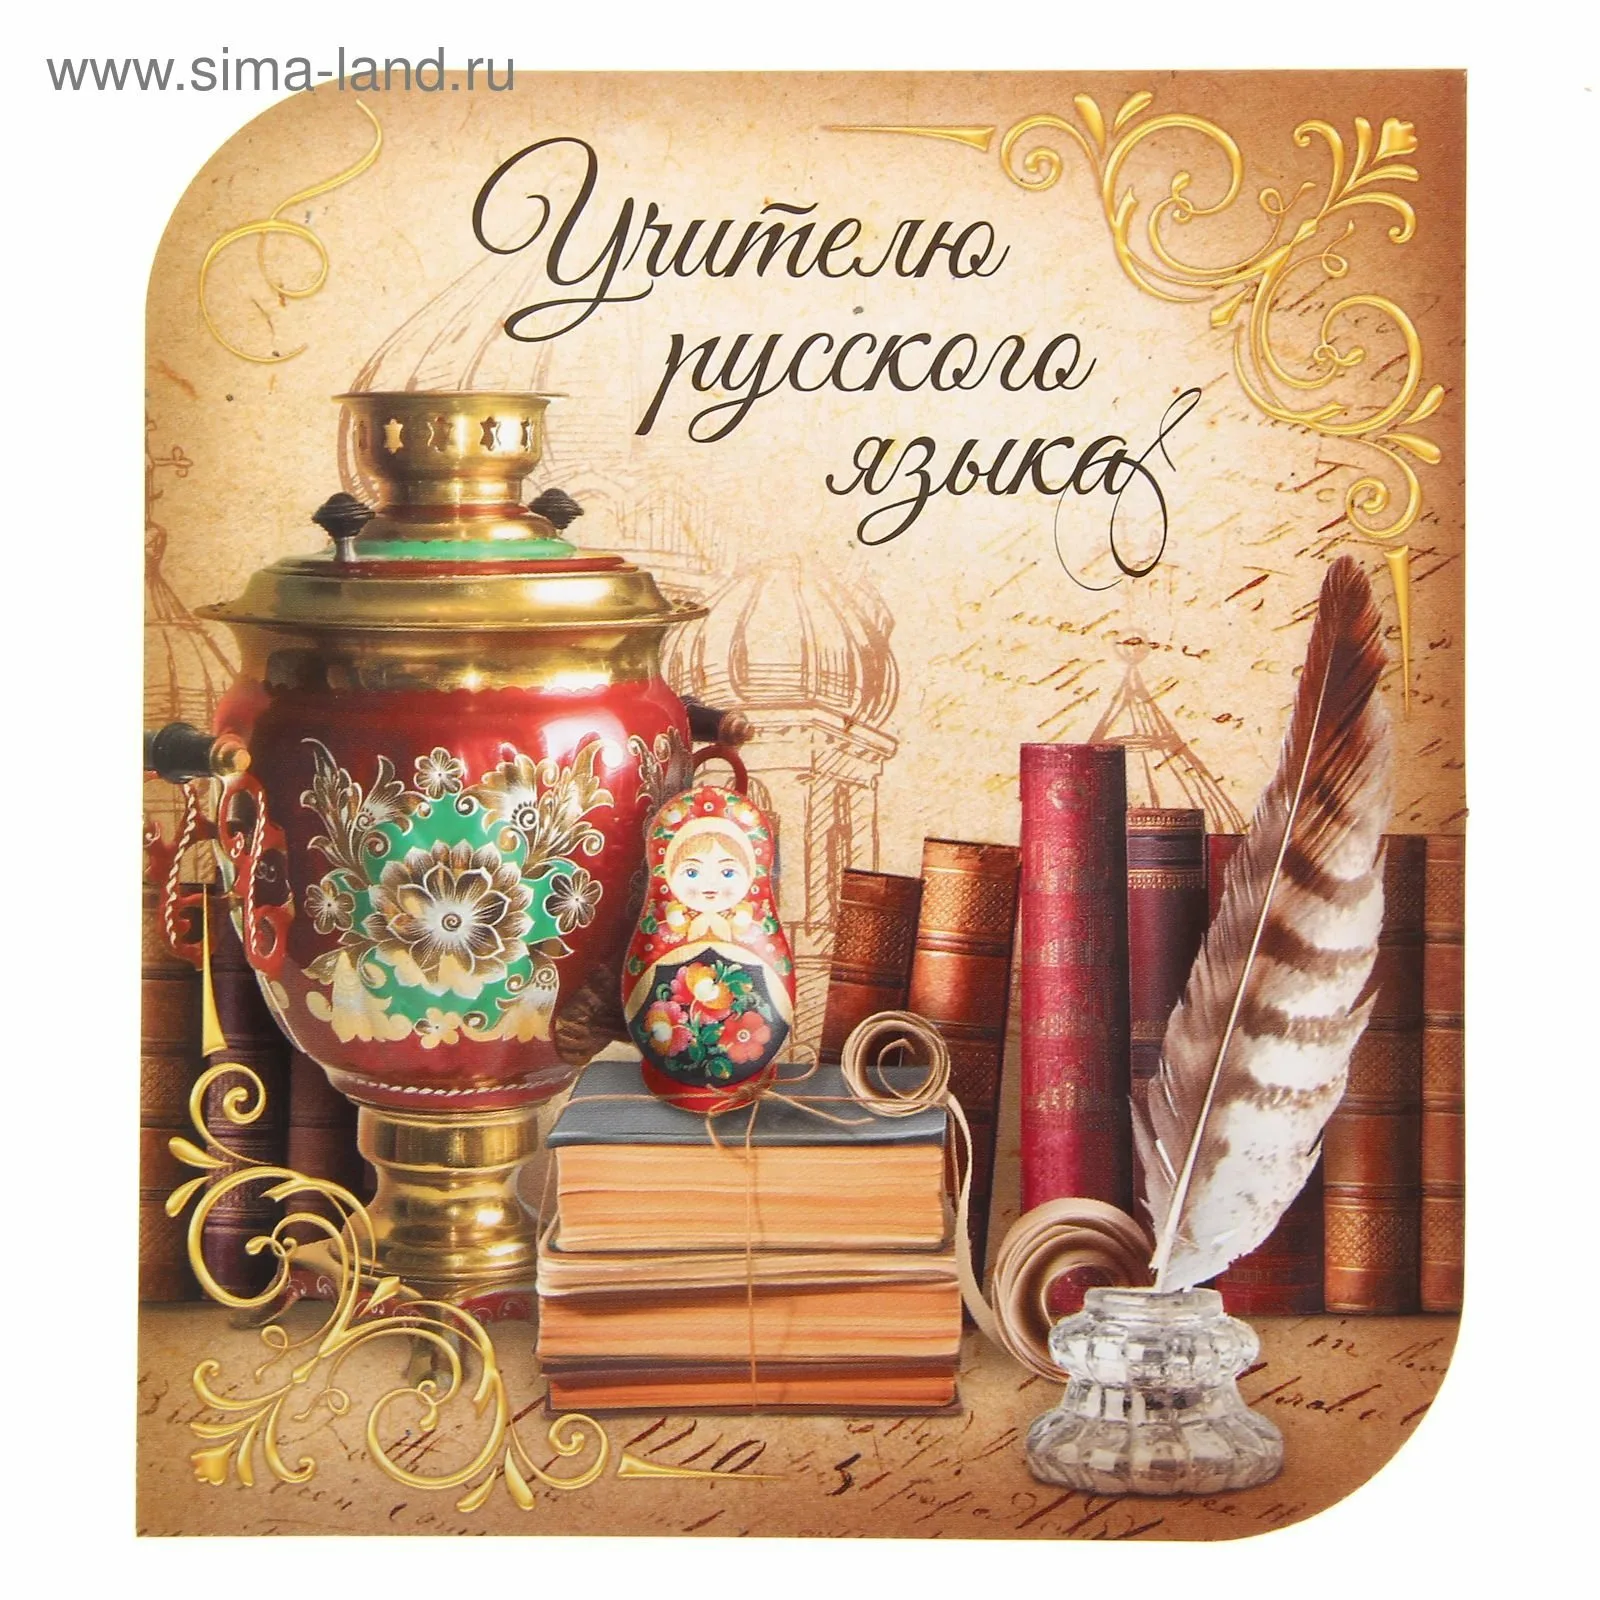 Фото Поздравления учителю белорусского языка #13